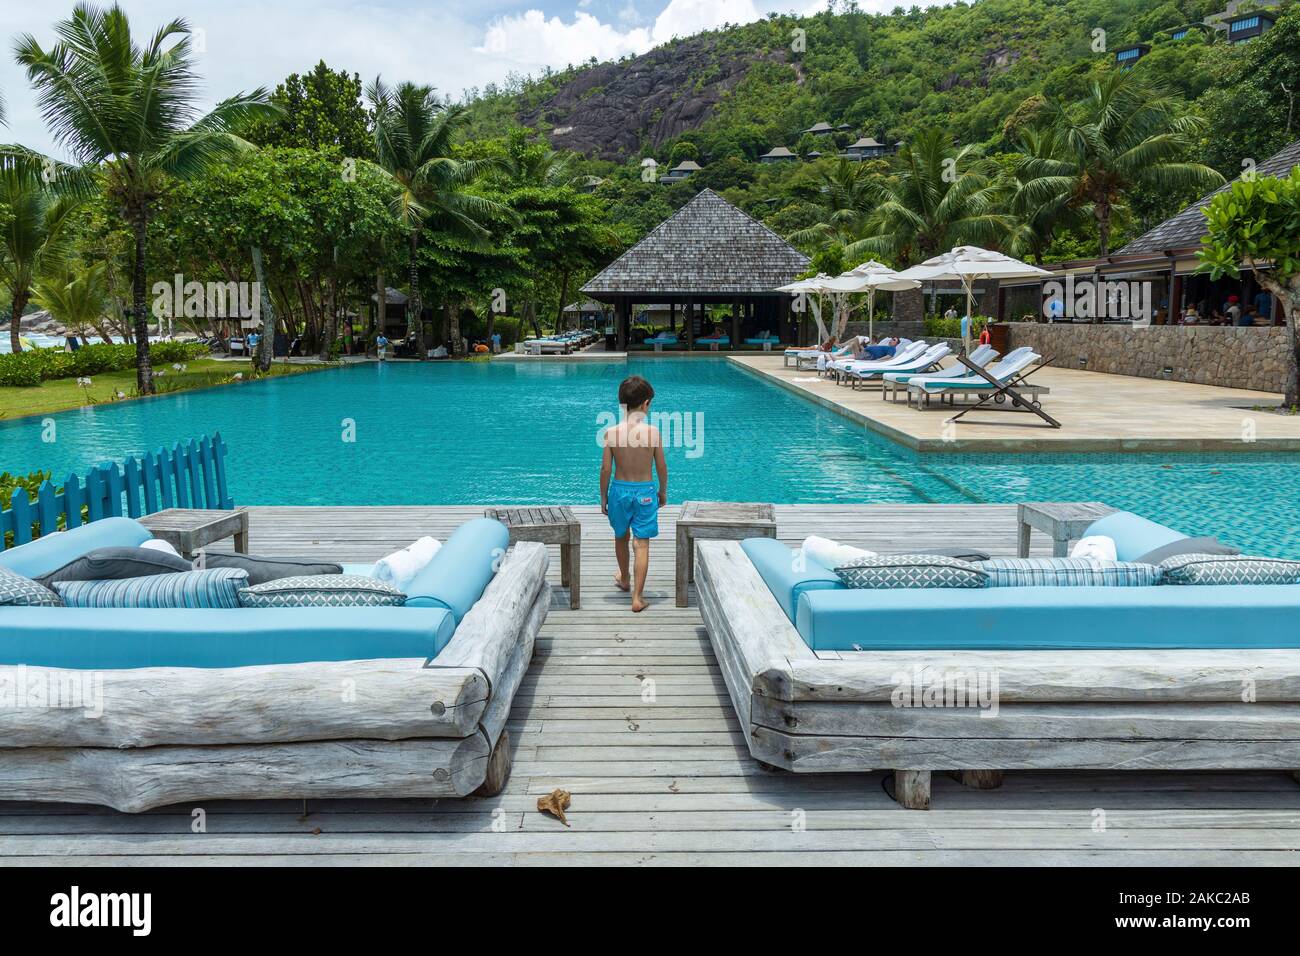 Seychelles, Mahe Island, Anse de la Liberte, Four Seasons Pool Stock Photo